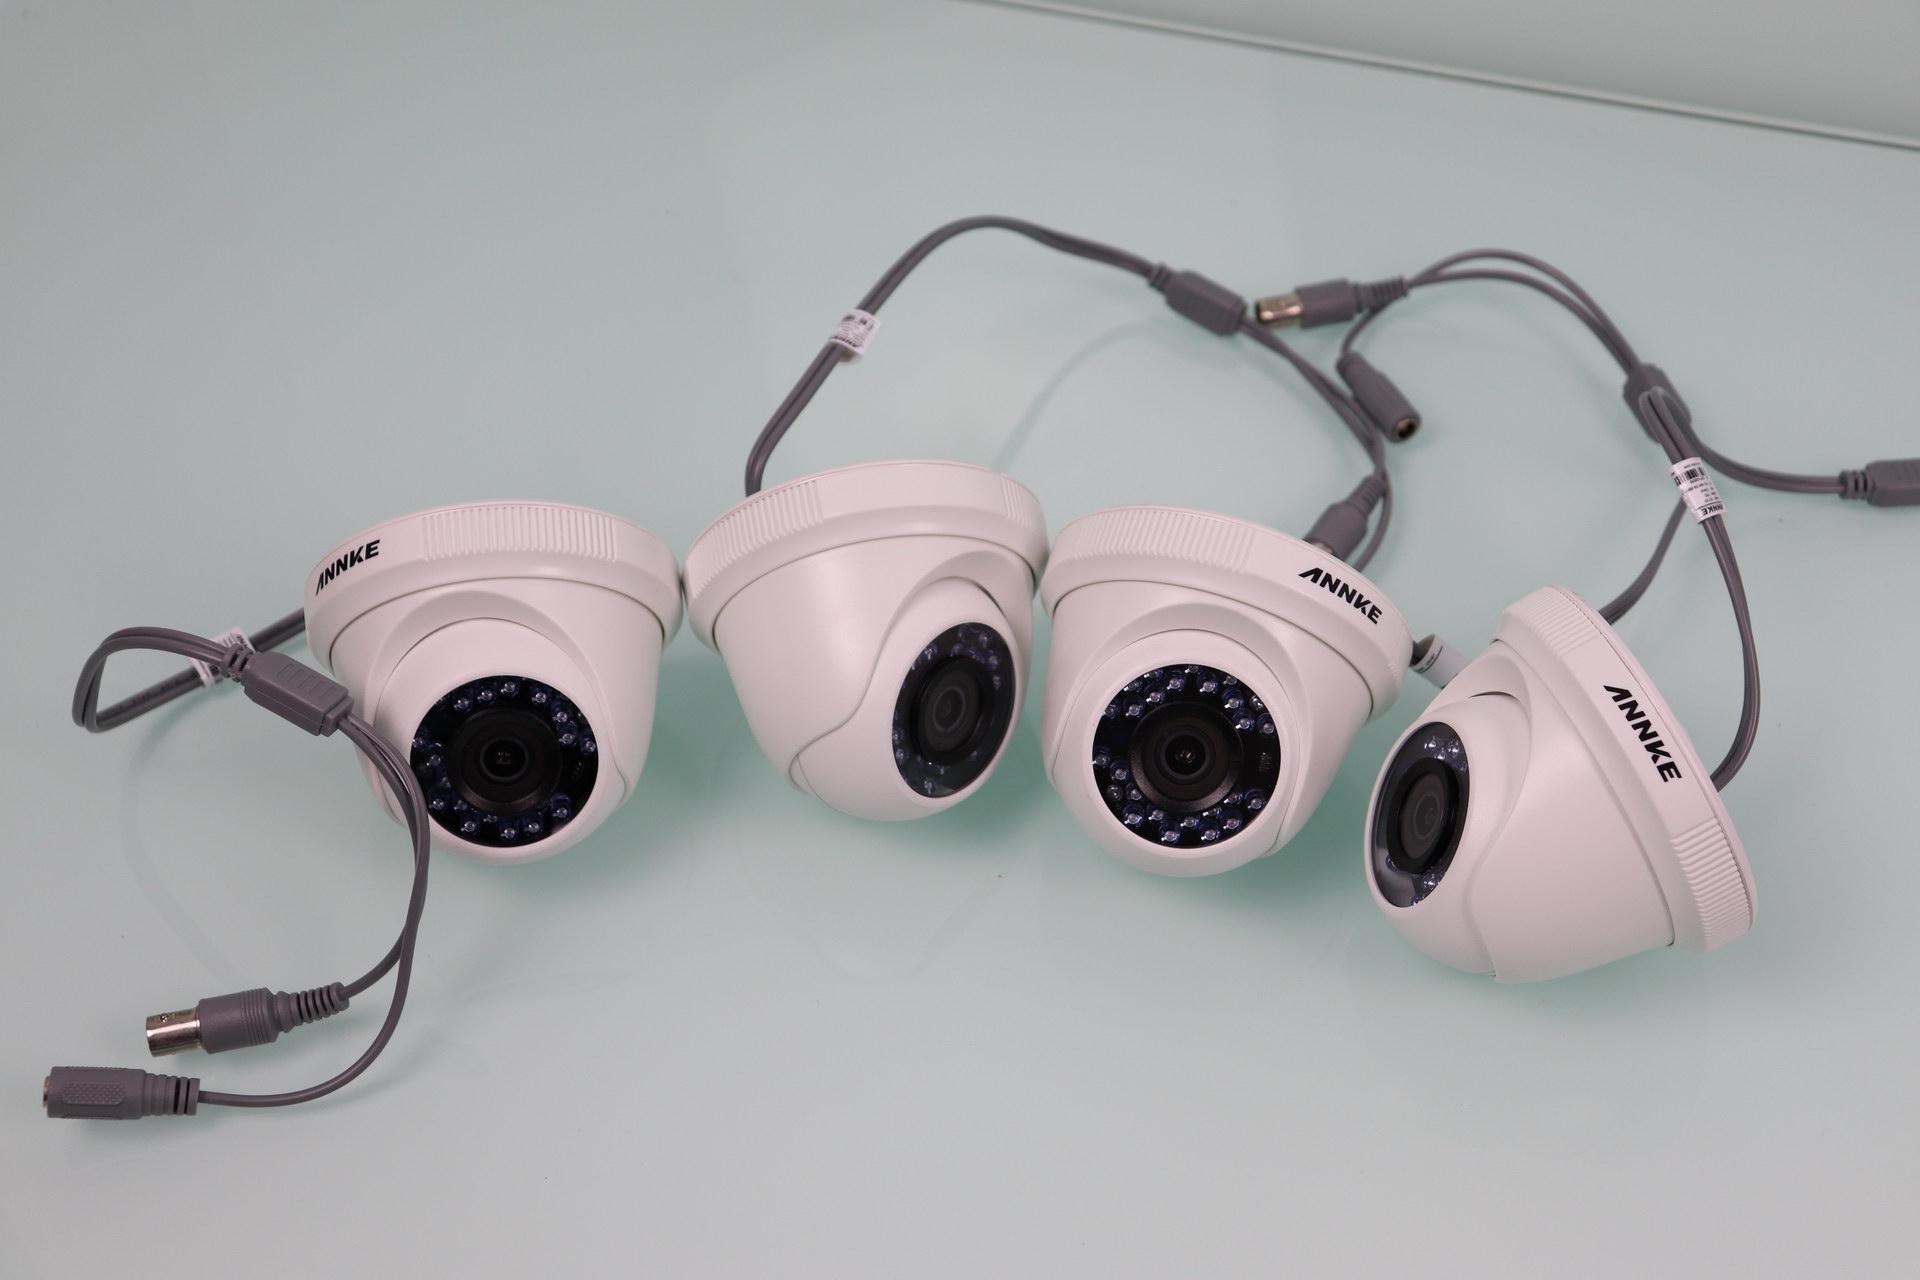 Vista de las 4 cámaras del ANNKE sistema de videovigilancia 1080p